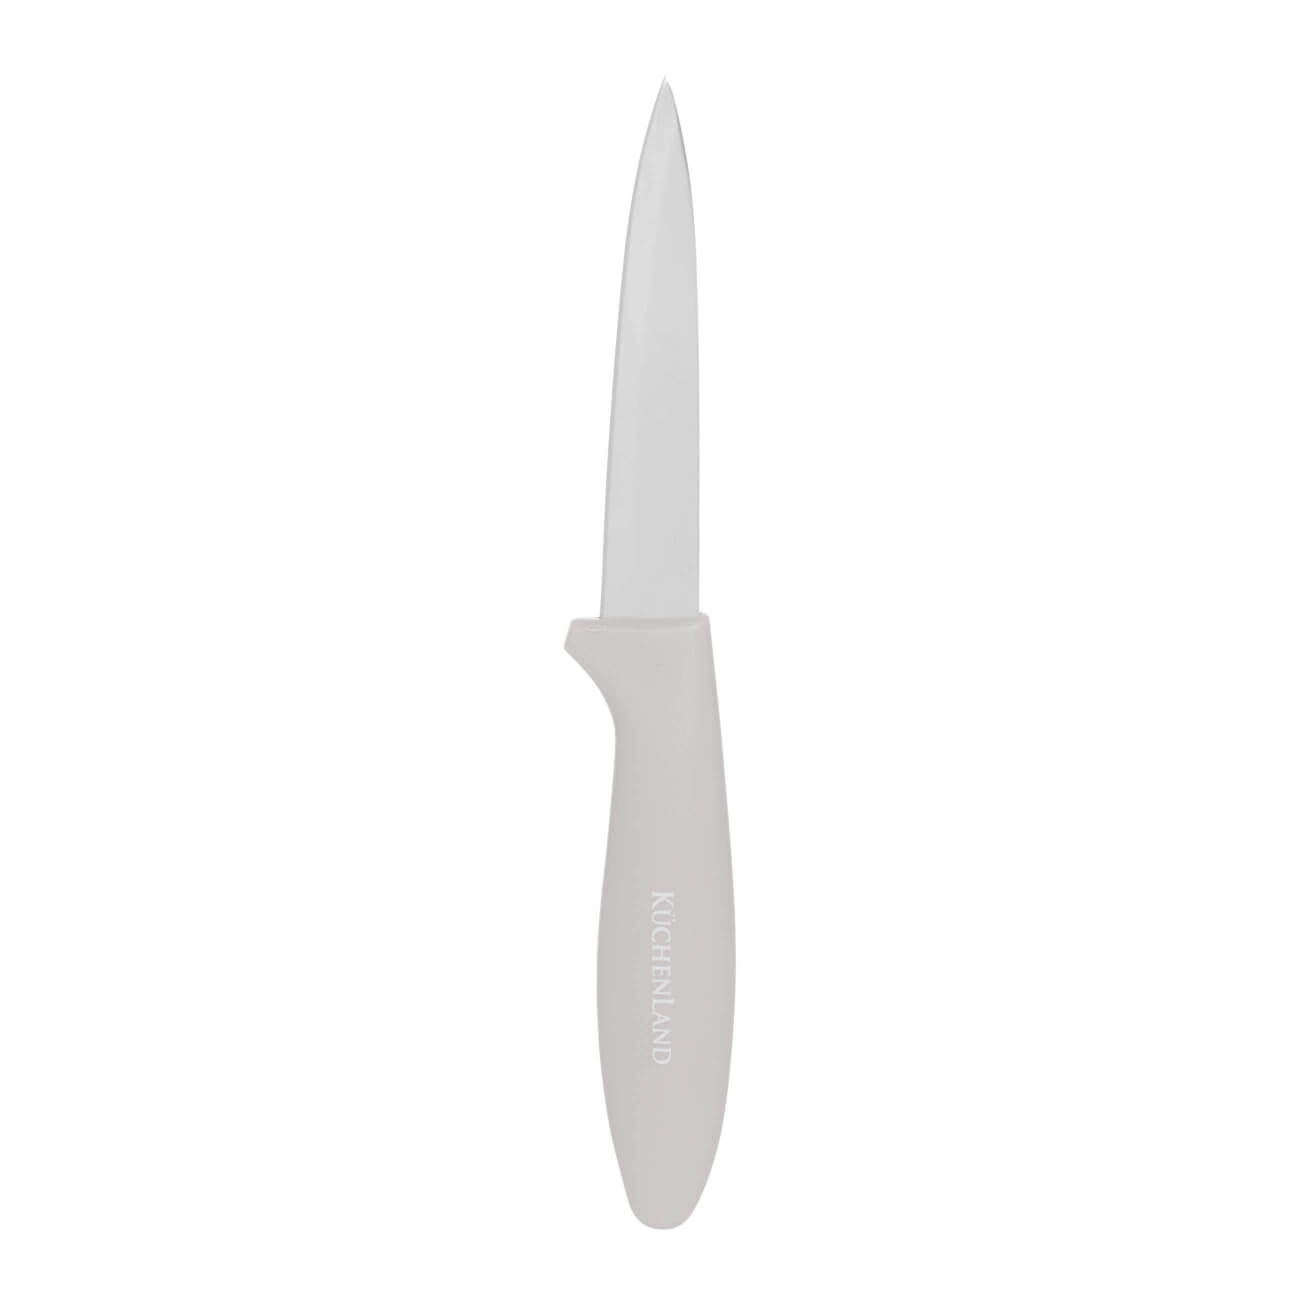 Нож для чистки овощей, 9 см, сталь/пластик, серо-коричневый, Supreme